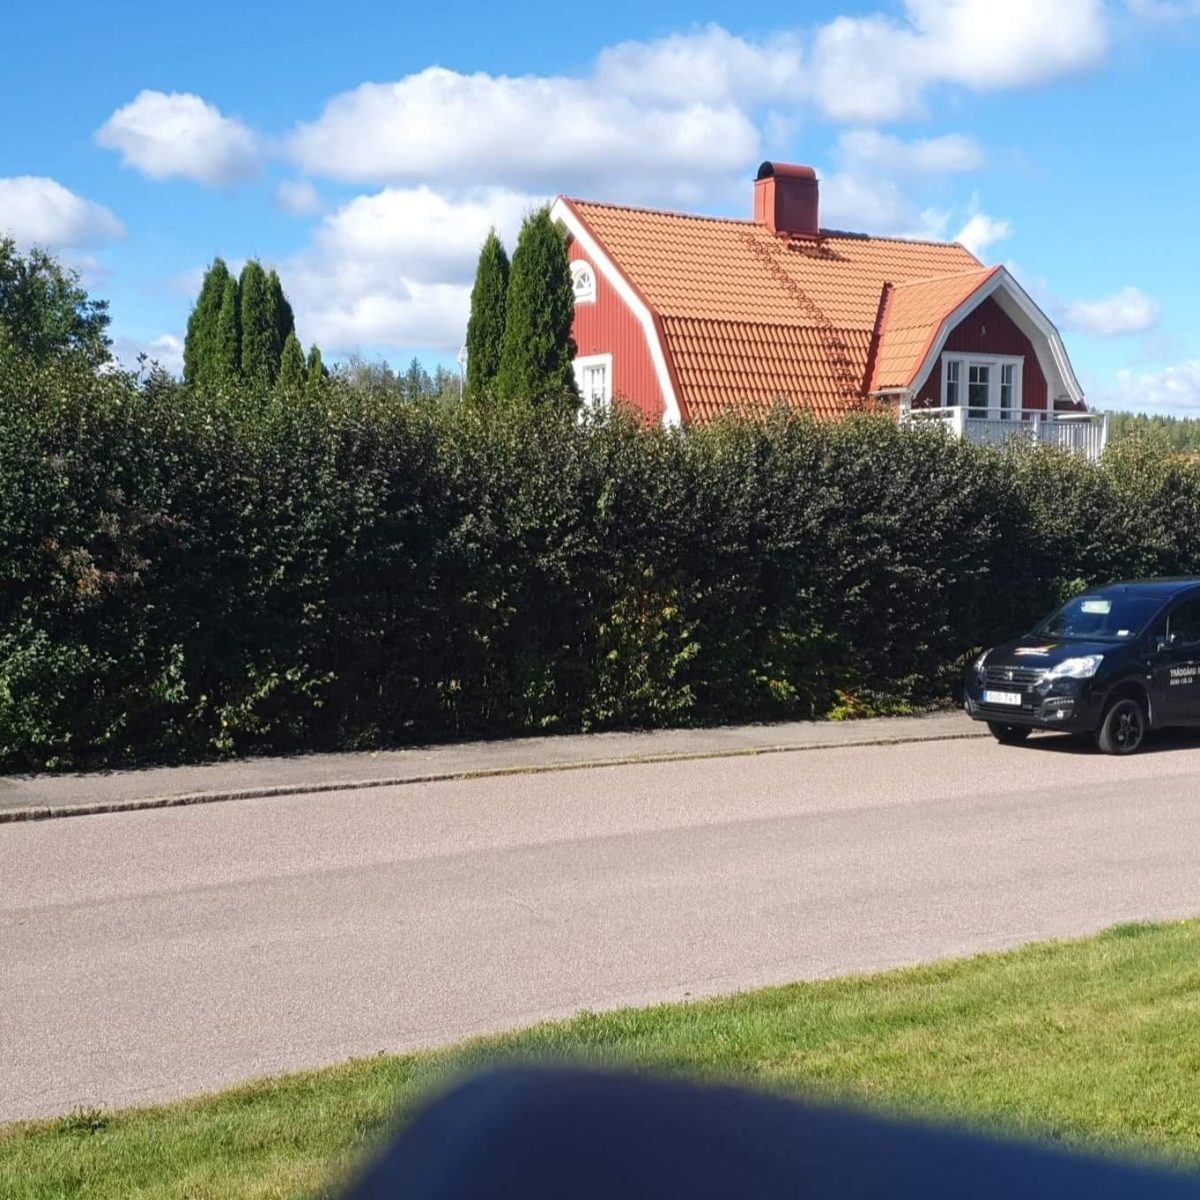 Bilden visar en idyllisk svensk villa med röda tegelväggar och ett mörkt tak, skyddad av en tät häck. Framför huset syns en arbetsbil med släp och en klarblå himmel ovanför, vilket antyder en solig och klar dag.